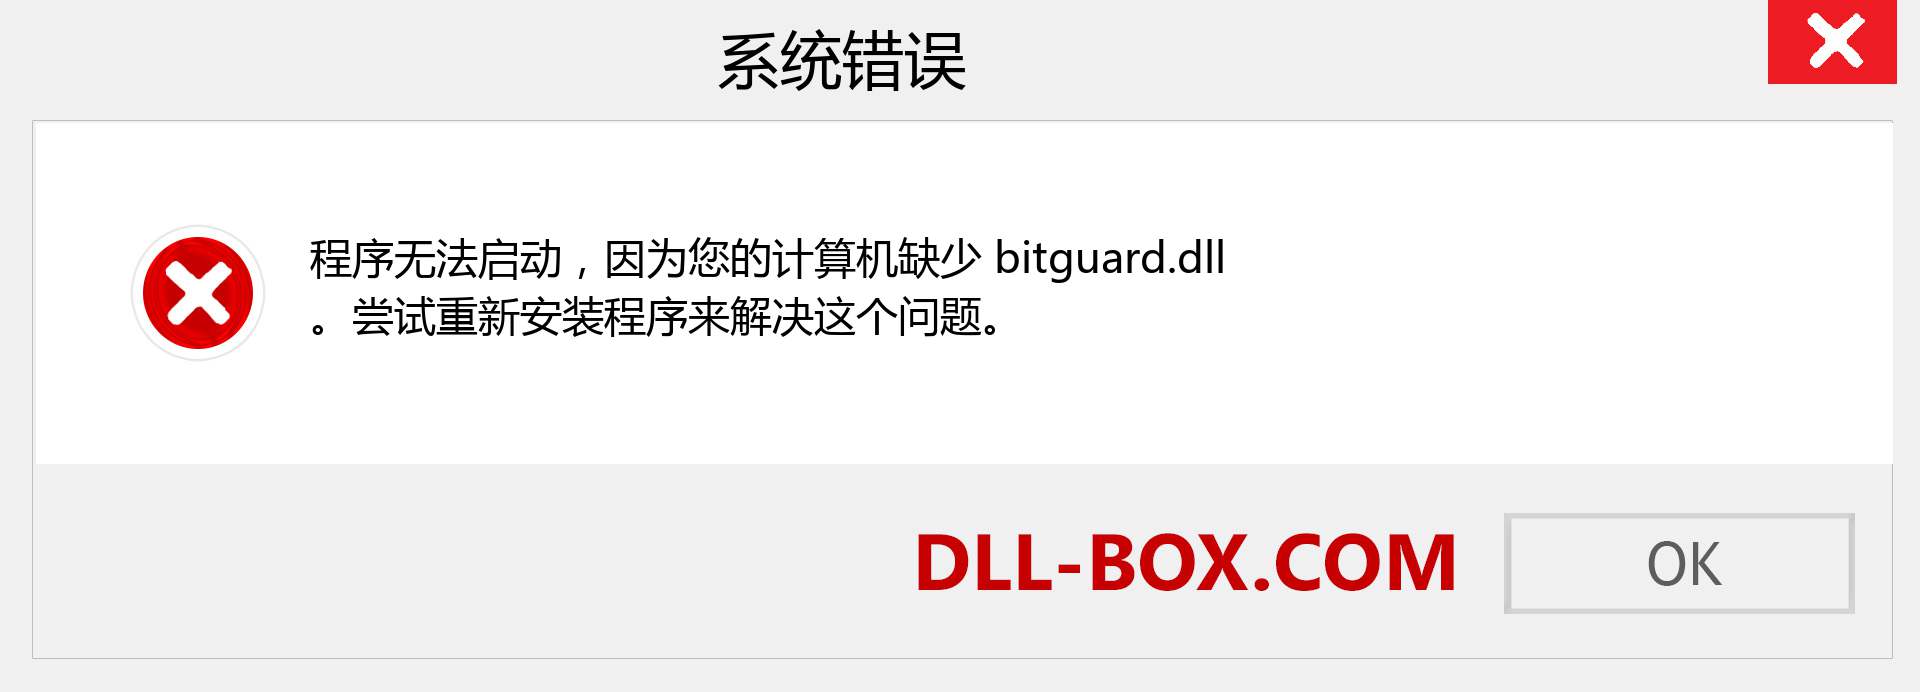 bitguard.dll 文件丢失？。 适用于 Windows 7、8、10 的下载 - 修复 Windows、照片、图像上的 bitguard dll 丢失错误